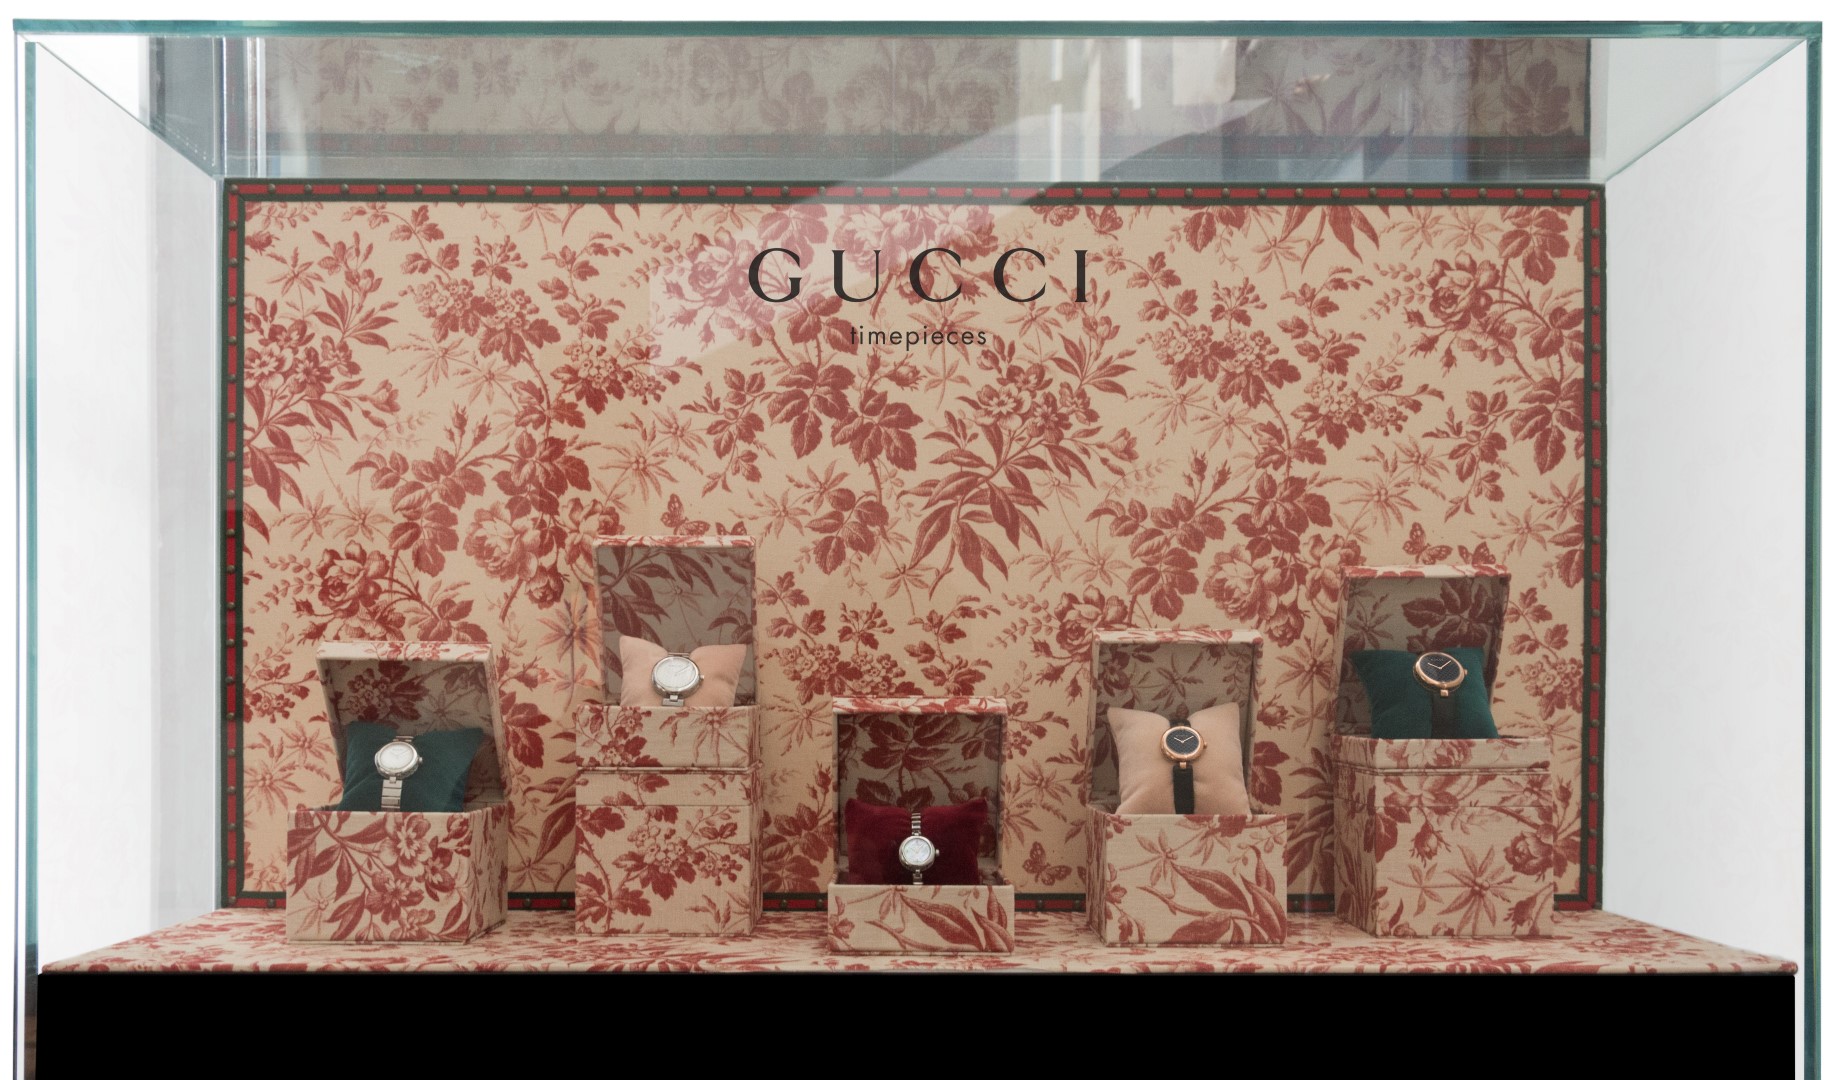 Gucci vetrine Natale 2015: una surreale illusione ottica presenta gli orologi e i gioielli del brand